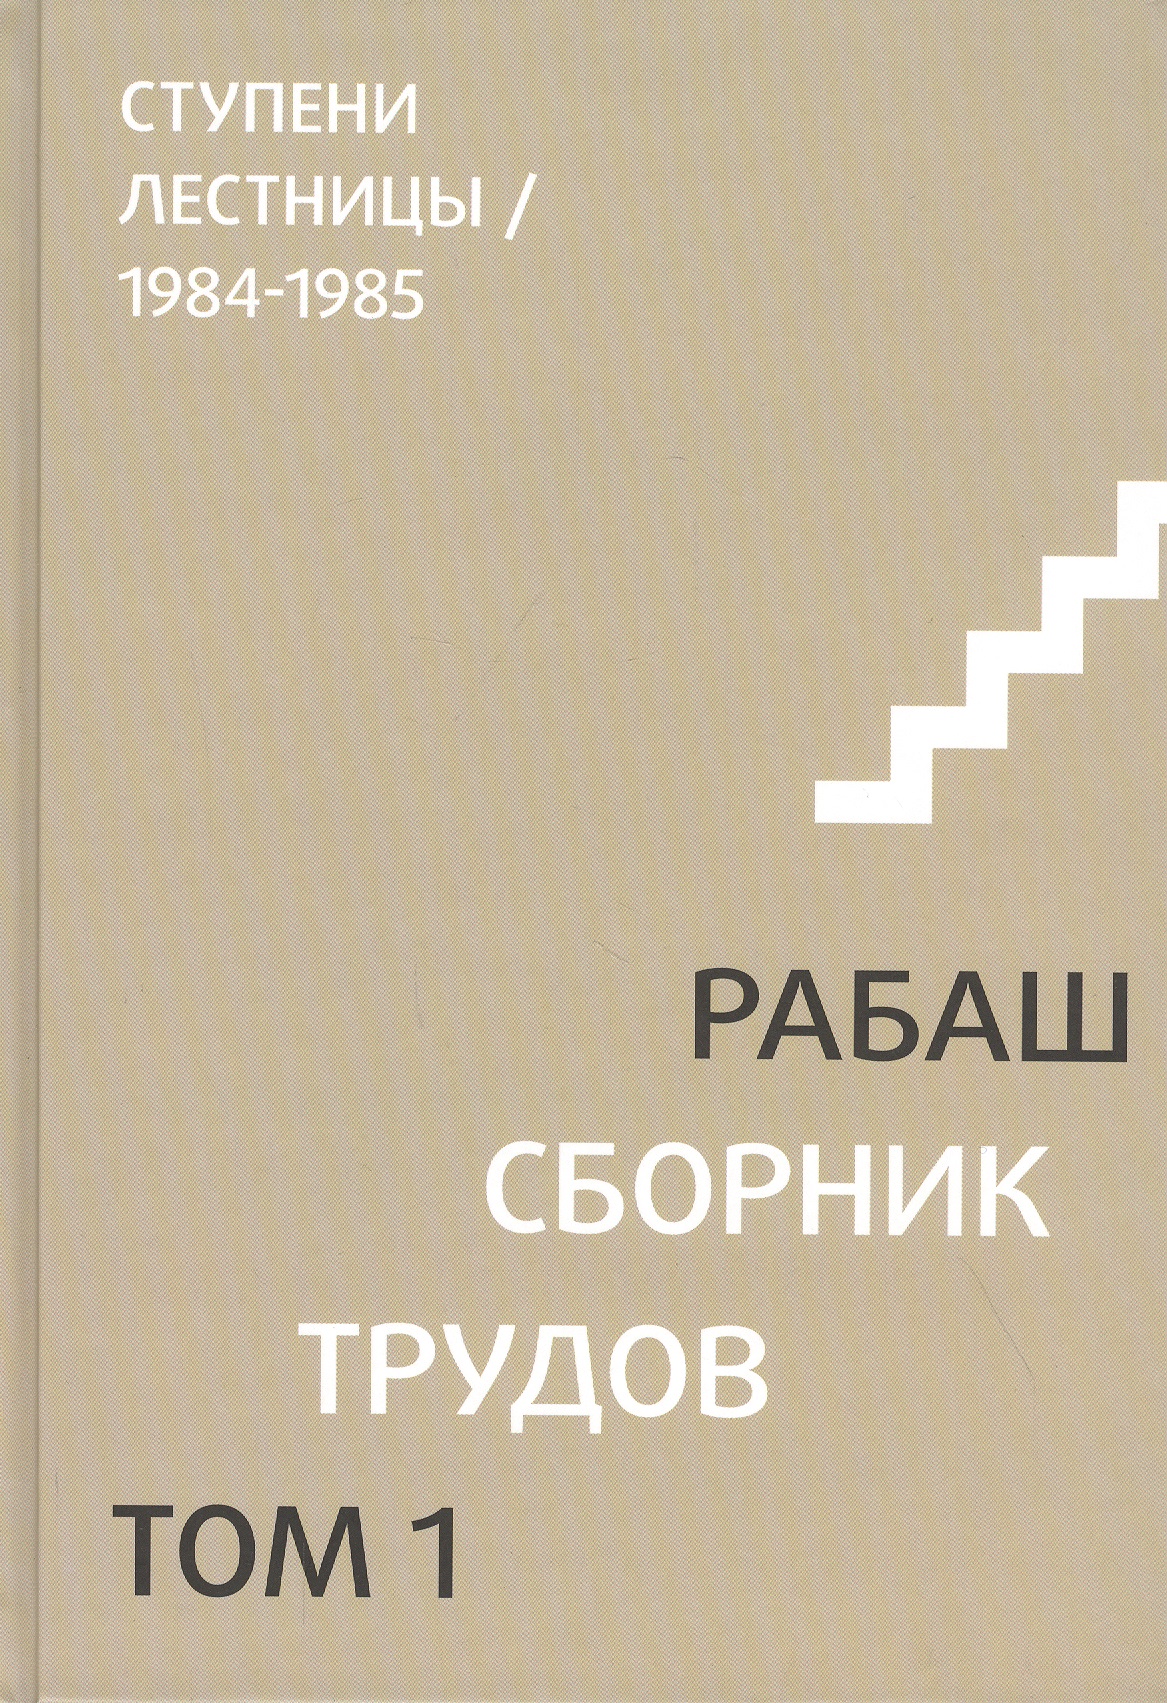 Сборник трудов. Том 1. Ступени лестницы 1984-1985 рабаш даргот сулам часть 1